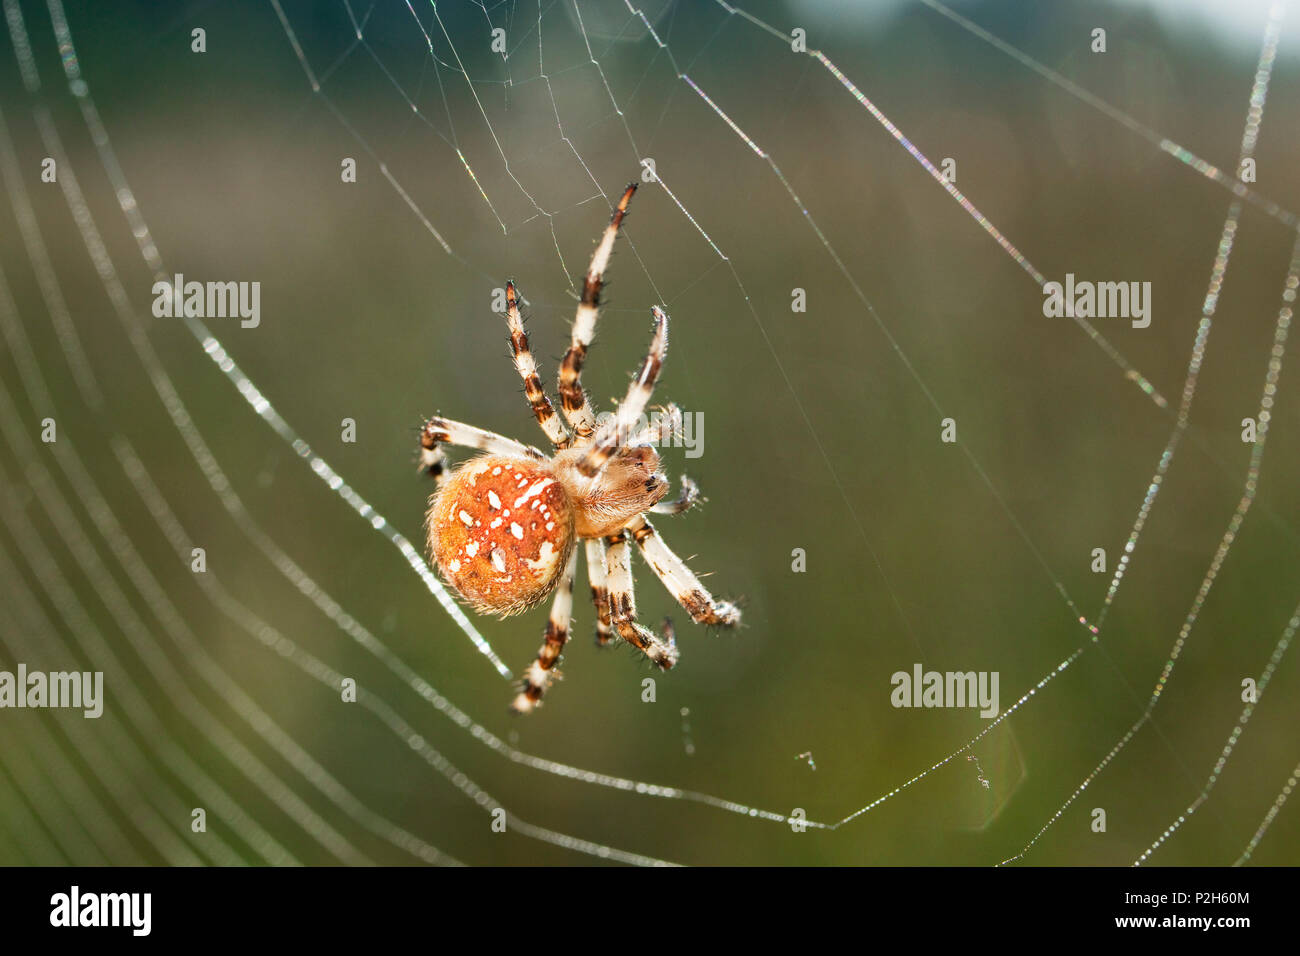 Jardin araignée dans le web, Araneus spec., Bavaria, Germany, Europe Banque D'Images